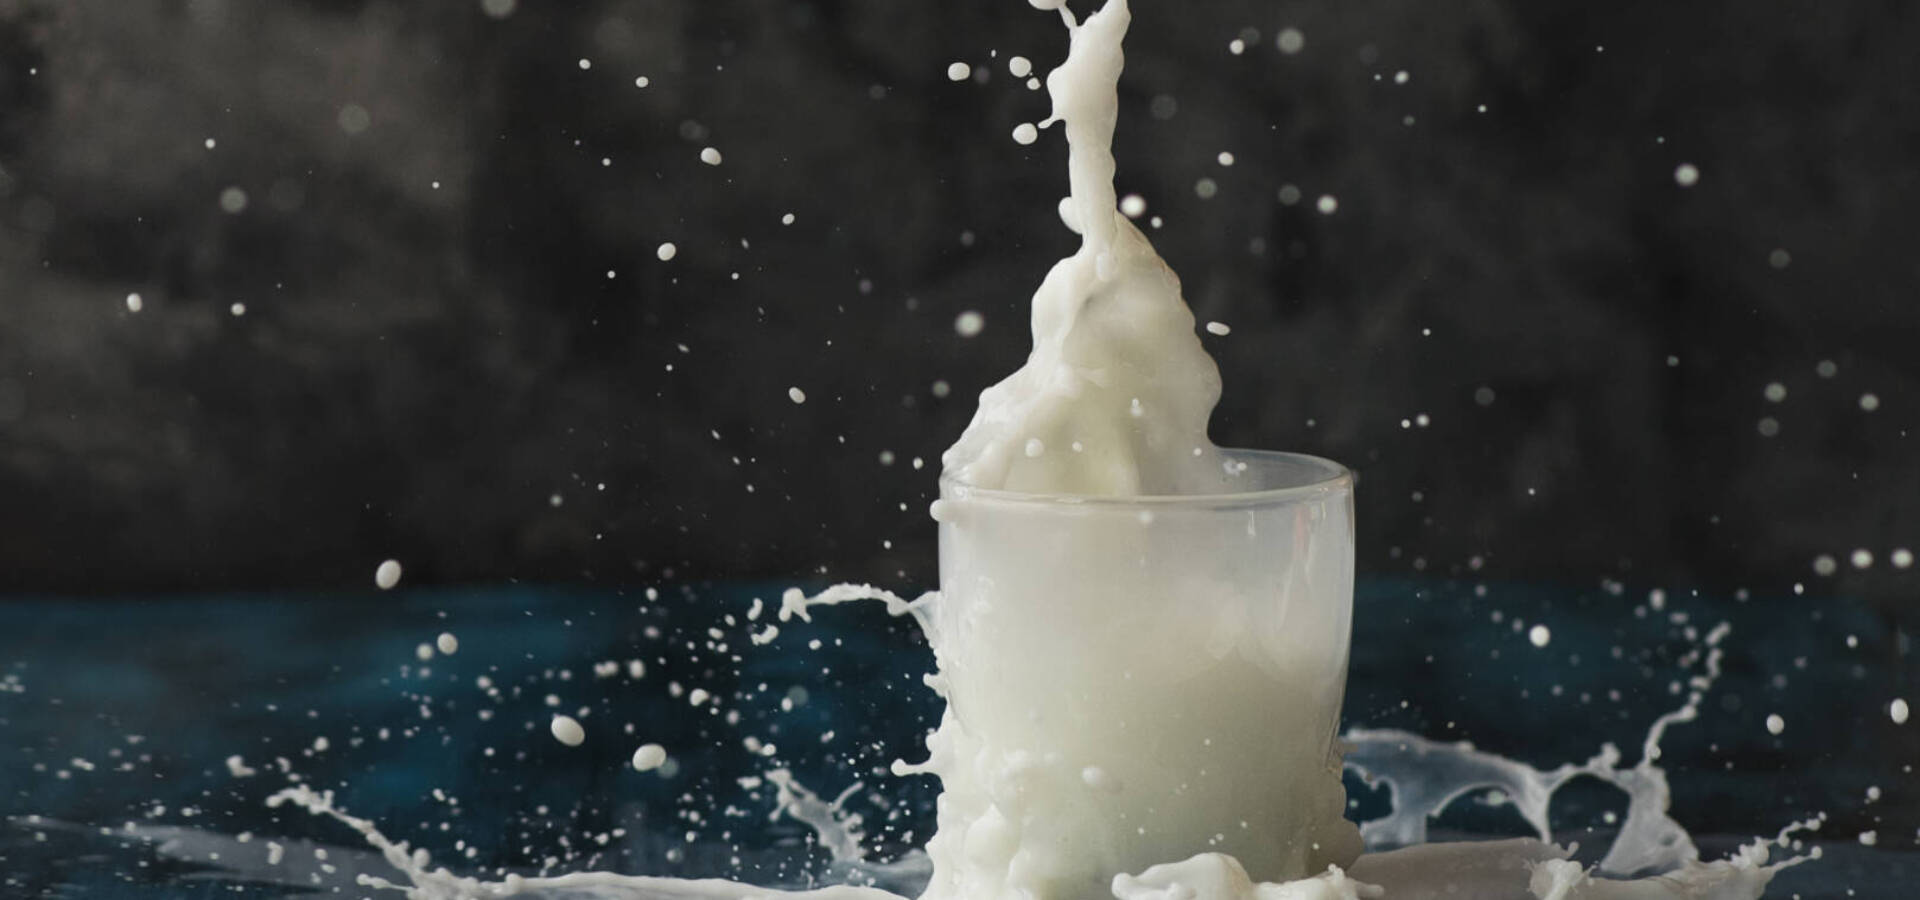 Splash of milk in a glass on dark background, fresh white drink